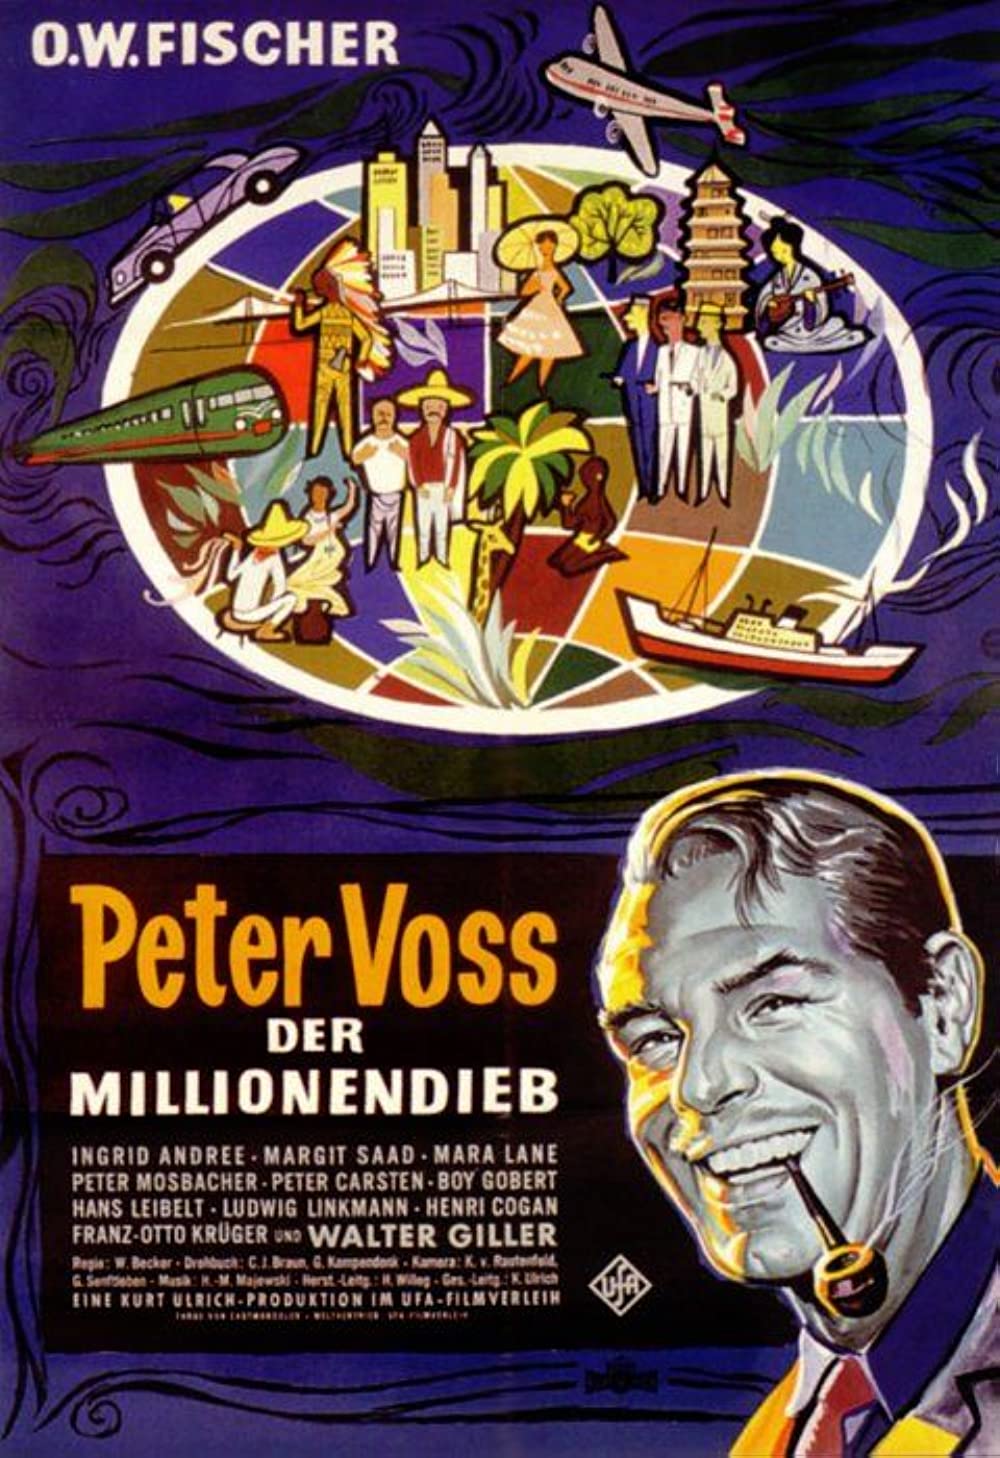 Filmbeschreibung zu Peter Voss, der Millionendieb